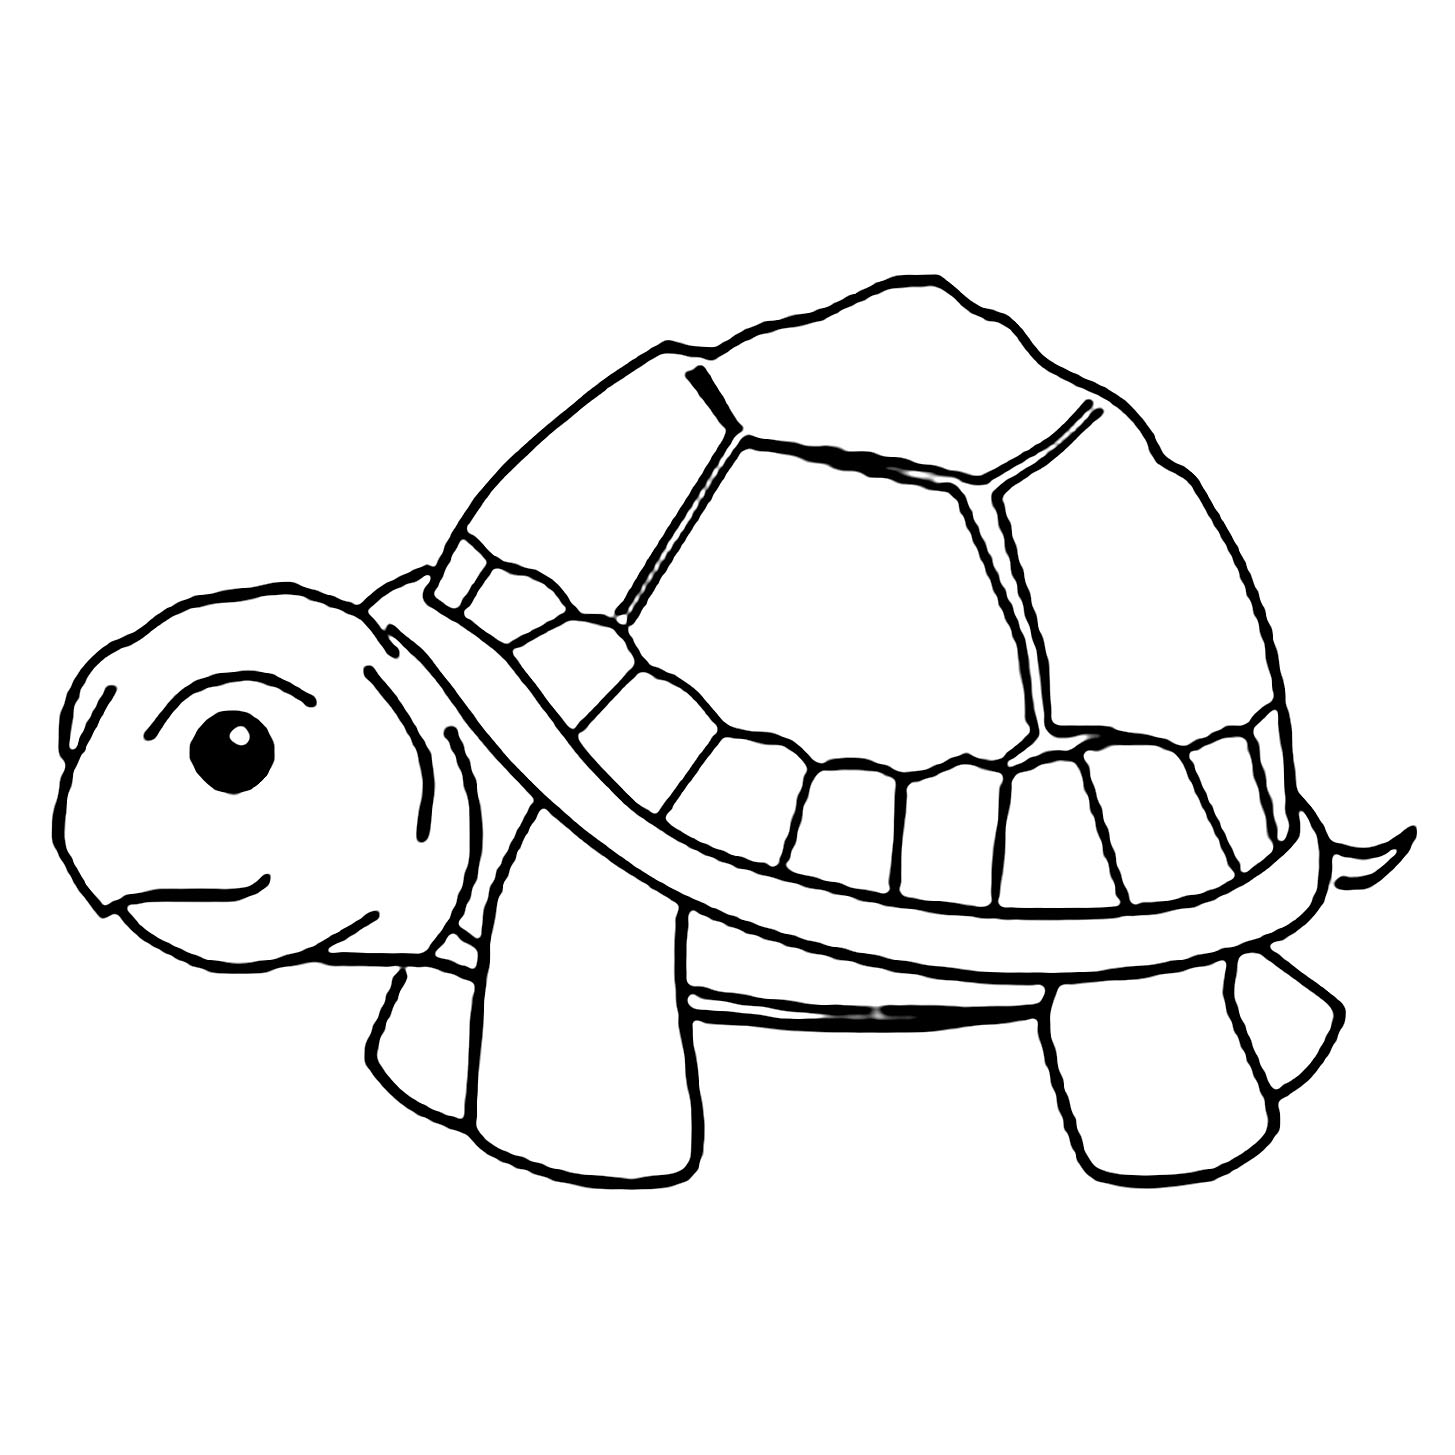 Joli coloriage de tortue simple pour enfants